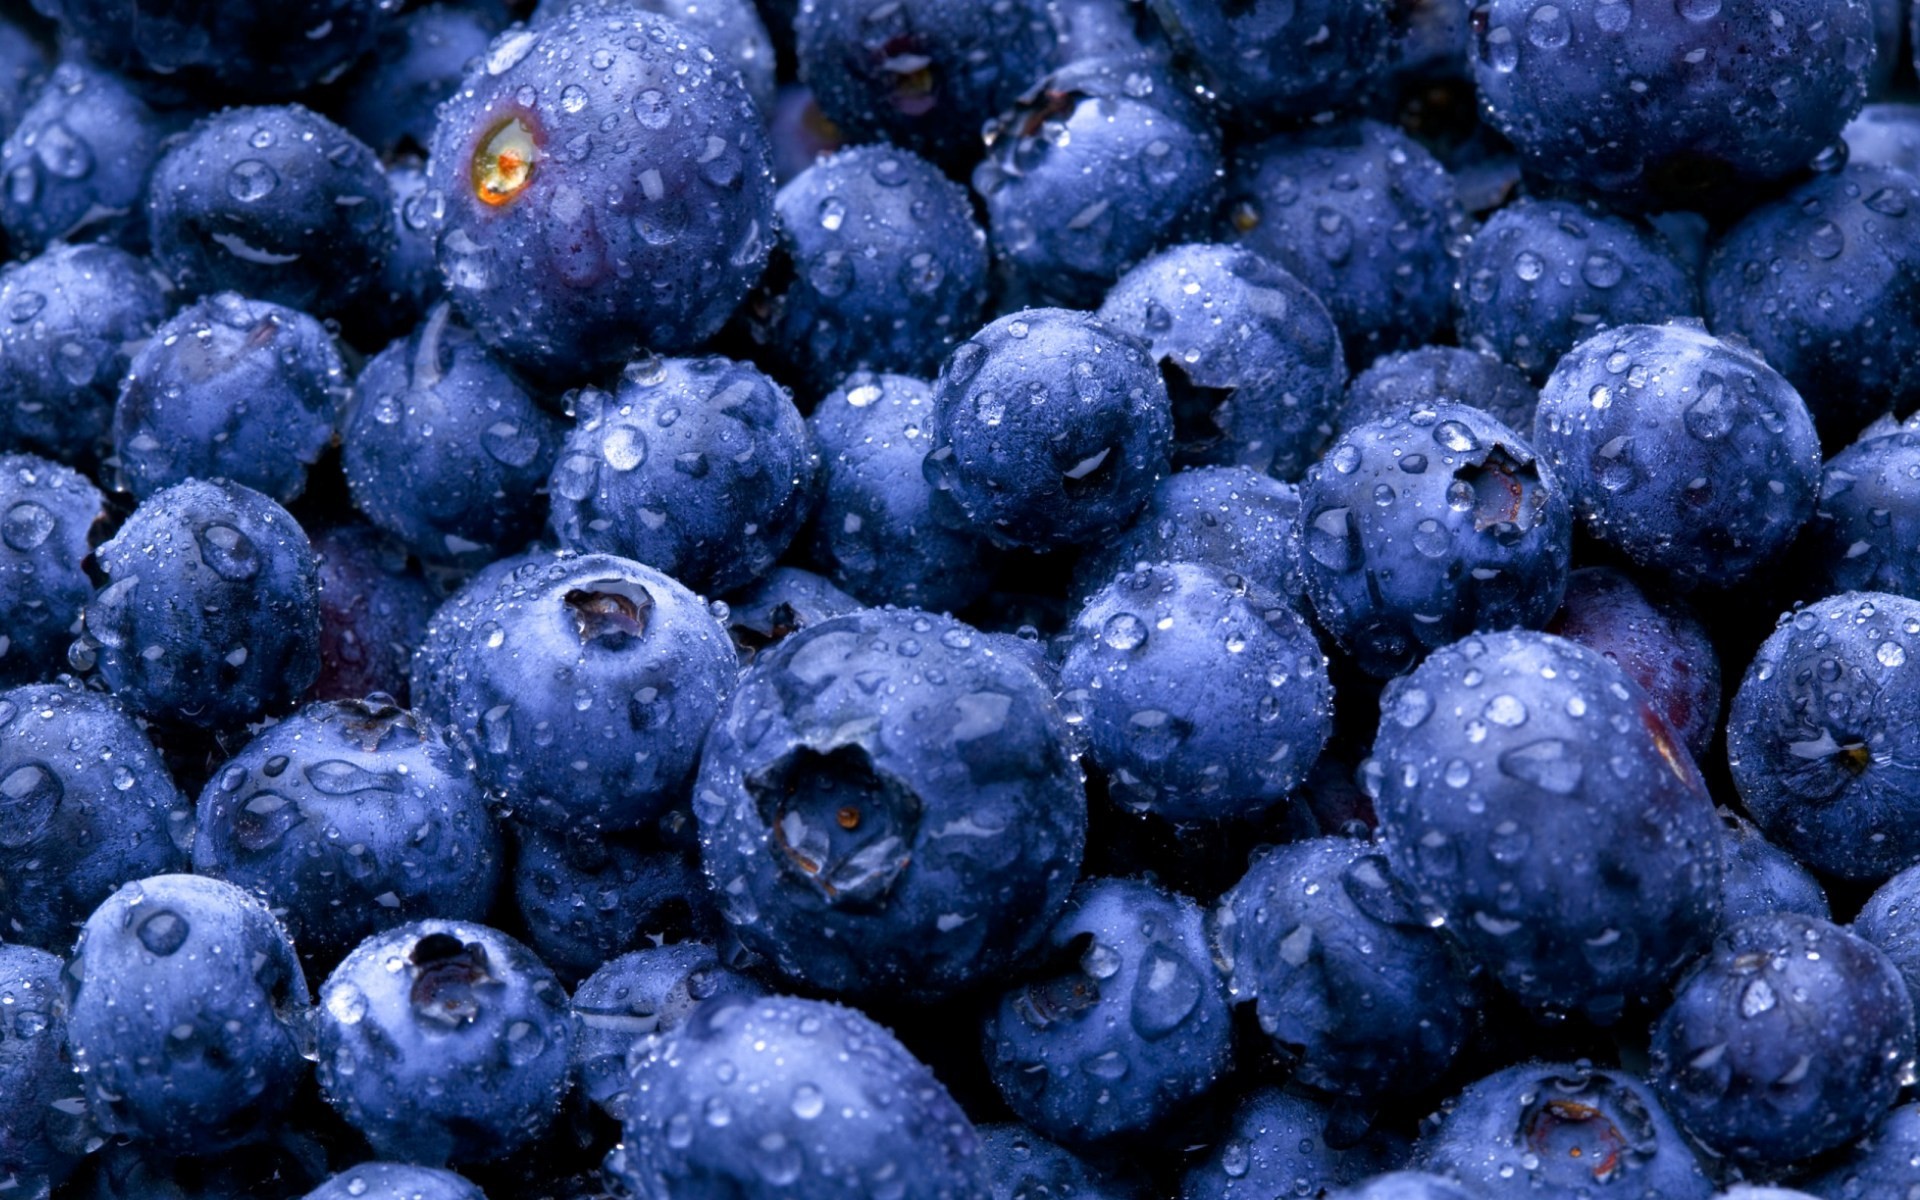 General 1920x1200 fruit blueberries wet macro food water drops